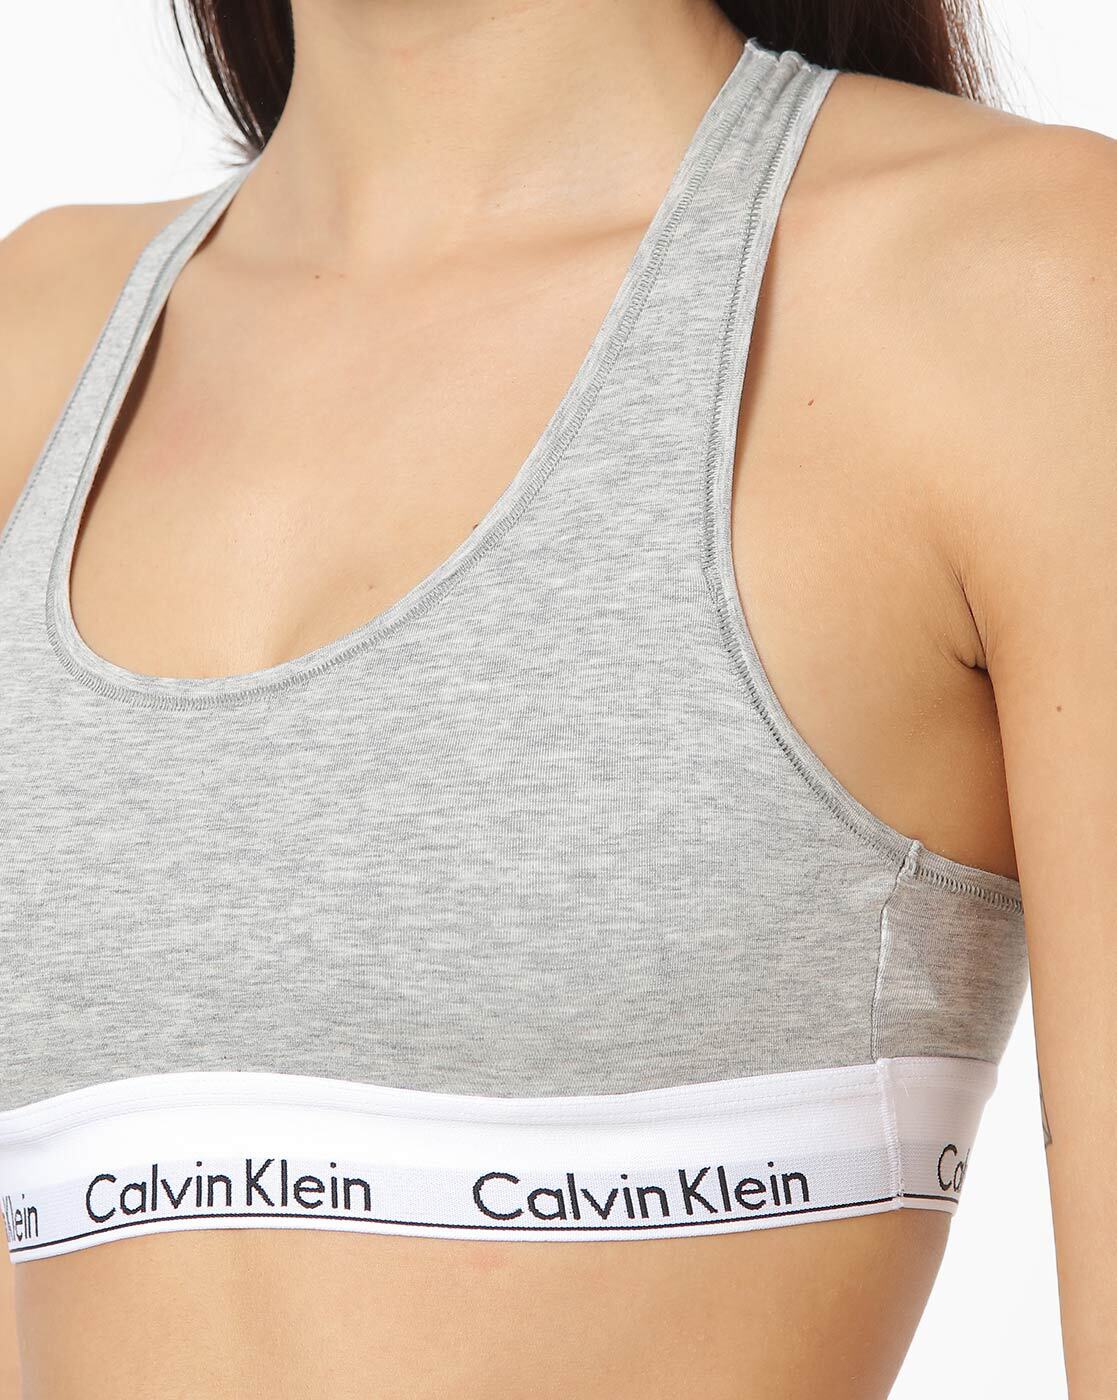 Buy Grey Bras for Women by Calvin Klein Underwear Online 